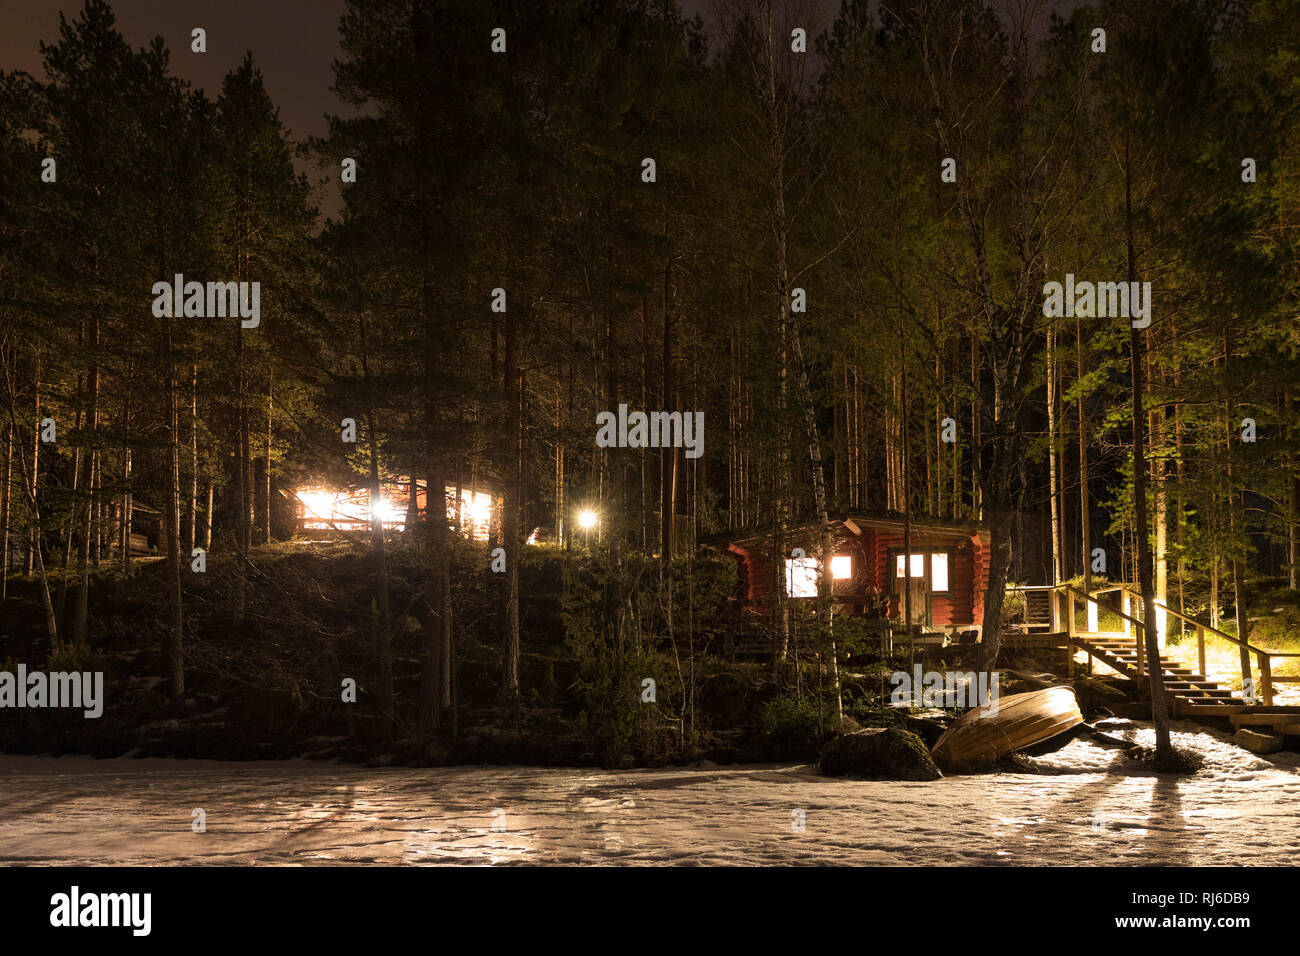 Finnland, Ferienhaus bei Nacht mit Licht Stock Photo